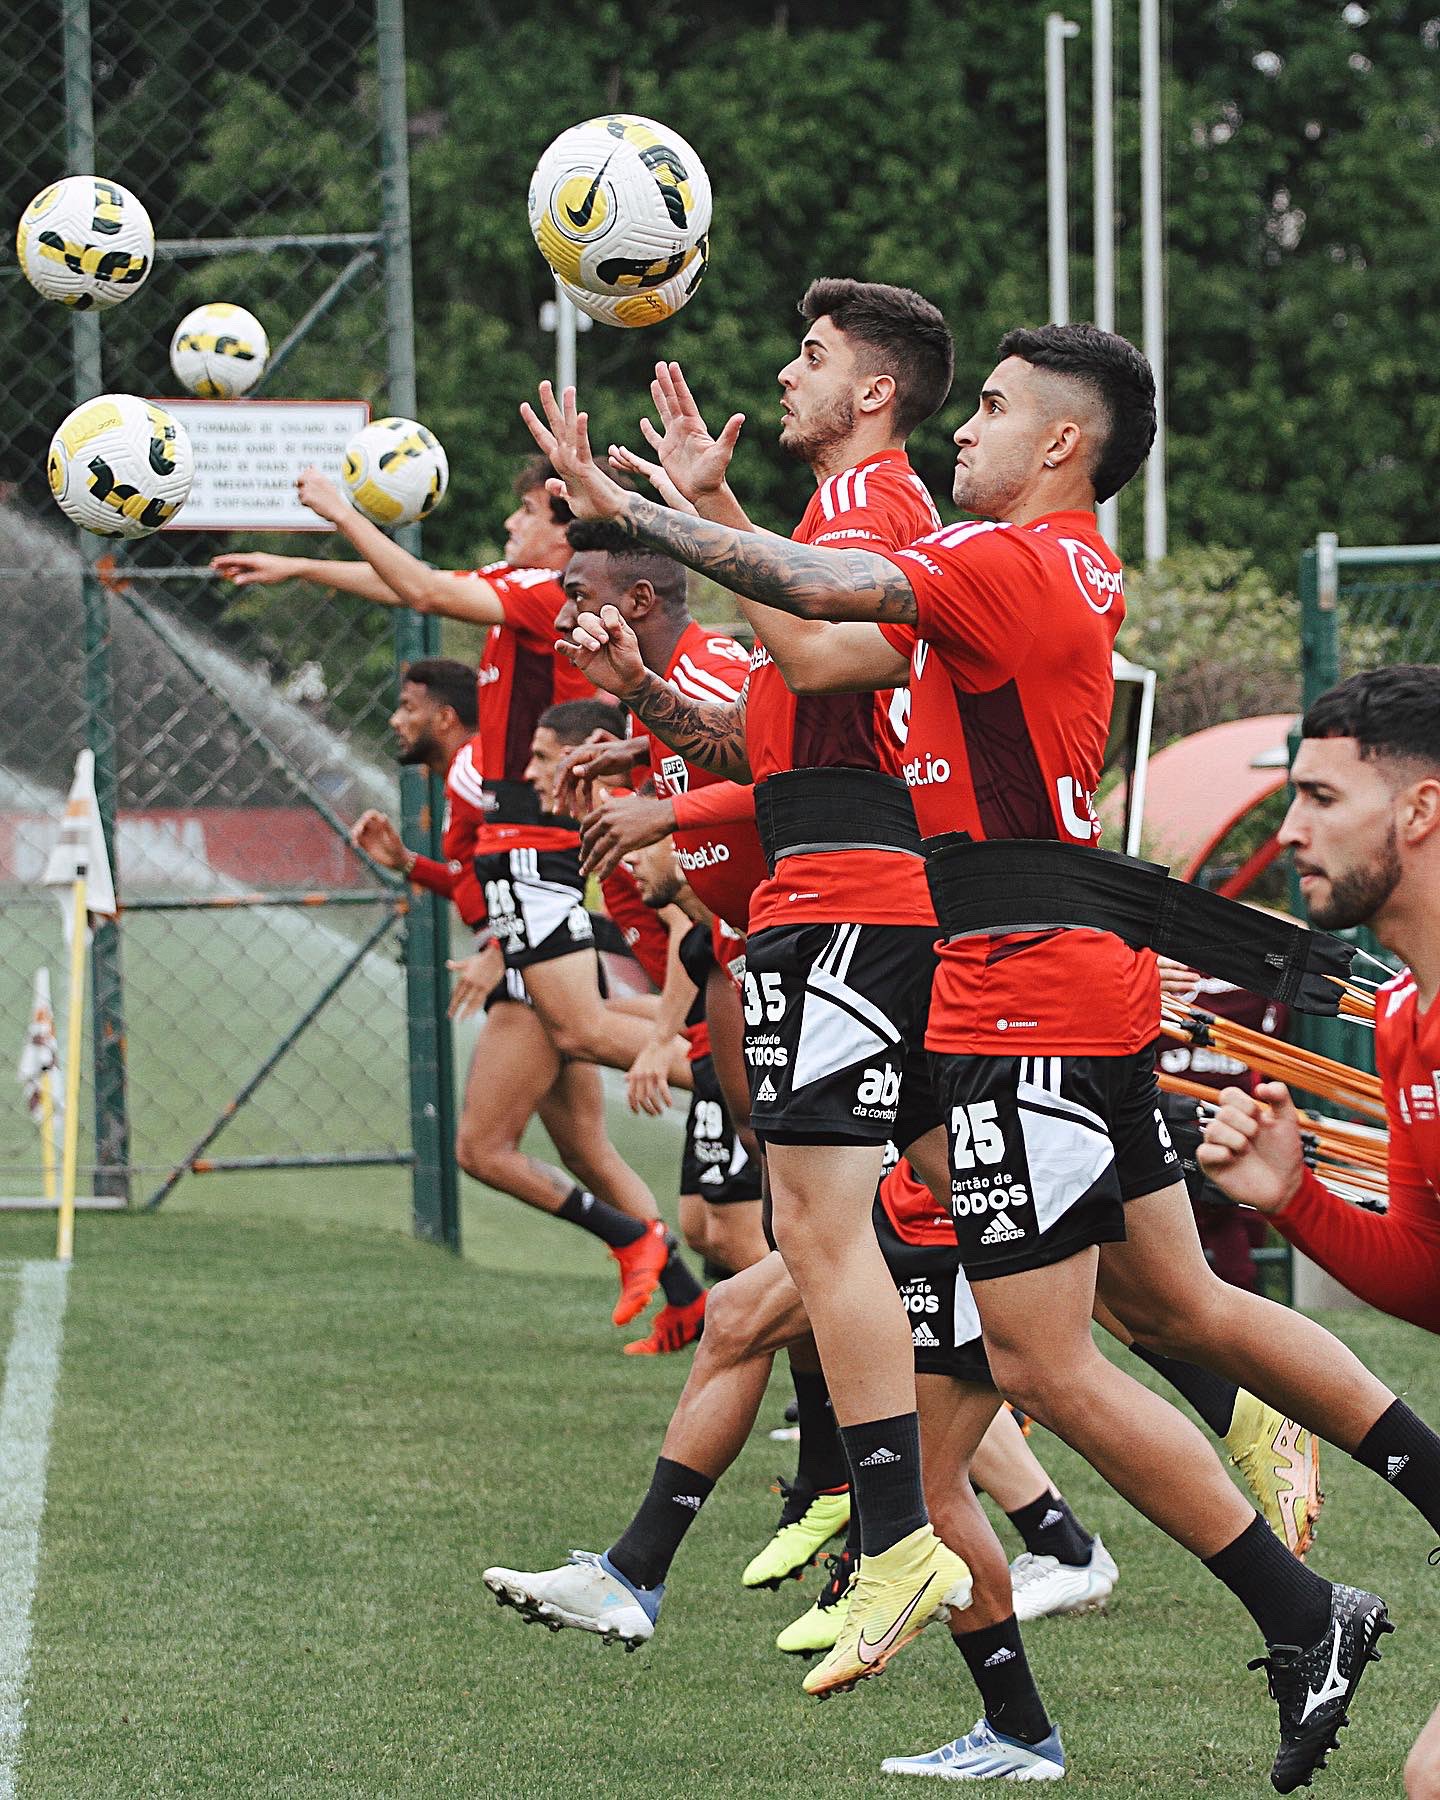 São Paulo finaliza mais um treino para pegar o Avaí; veja provável time 